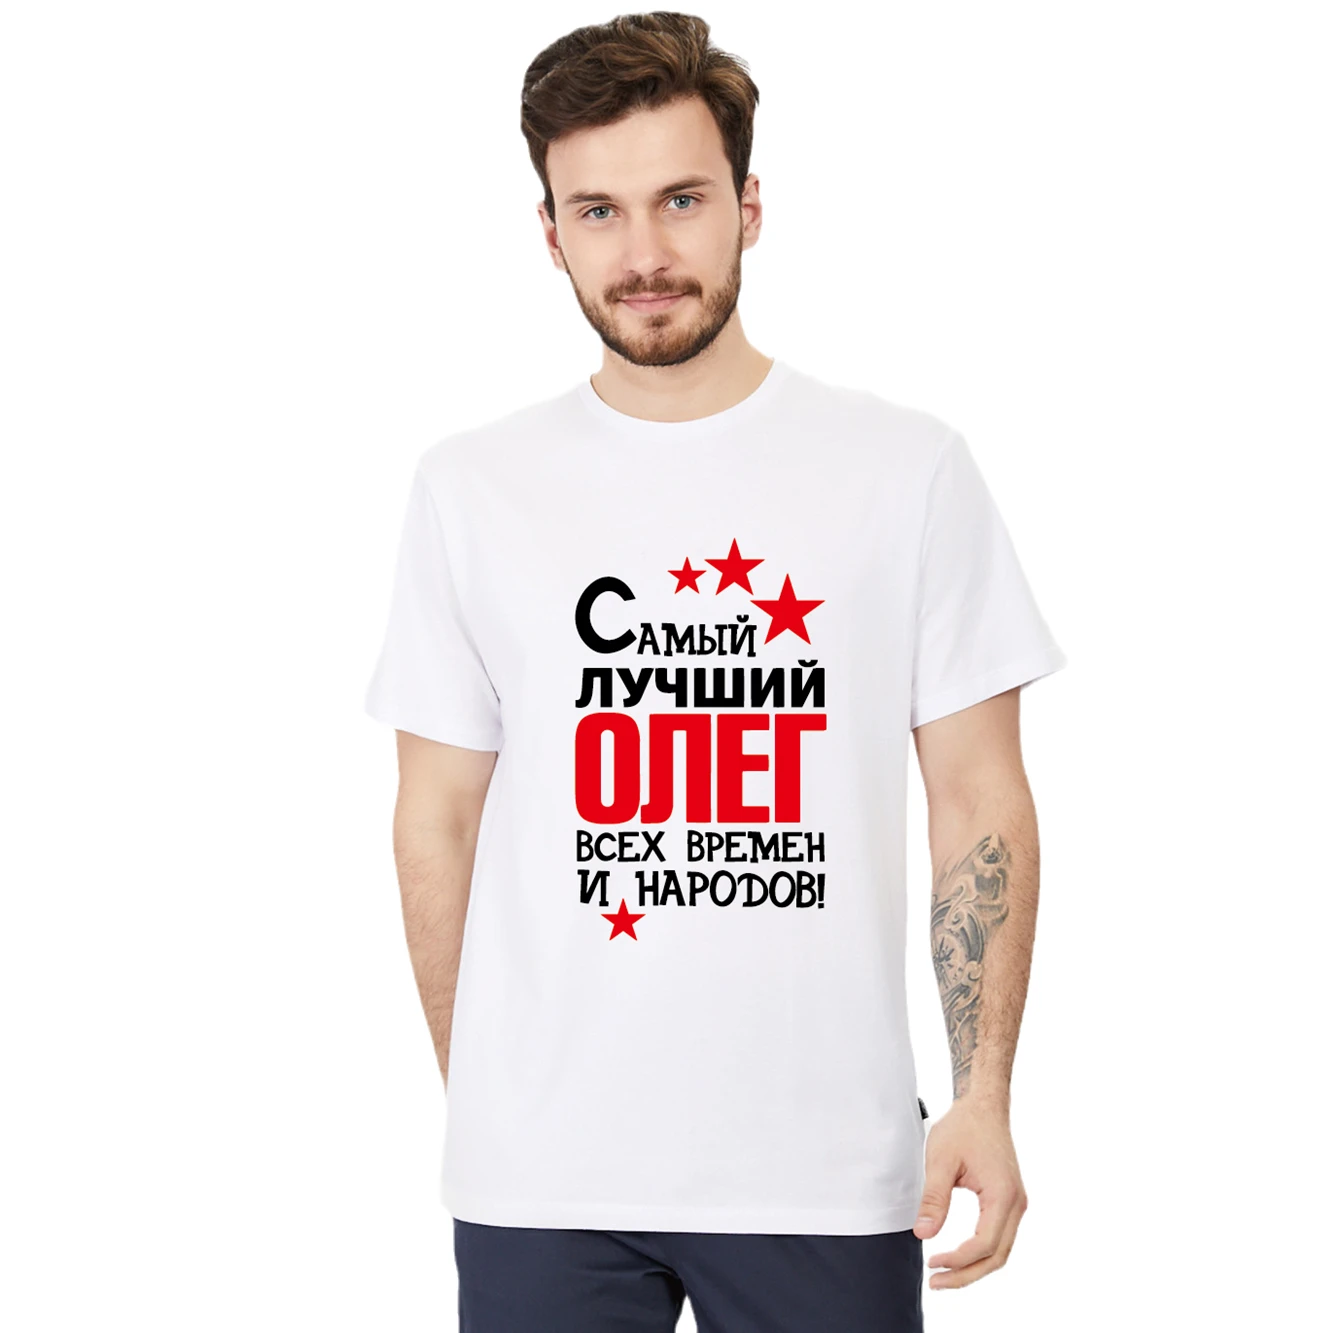 

Мужская хлопковая футболка с принтом, Лучший ОЛЕГ, И Народов! Модная рубашка в русском стиле, футболки, топы, индивидуальное имя